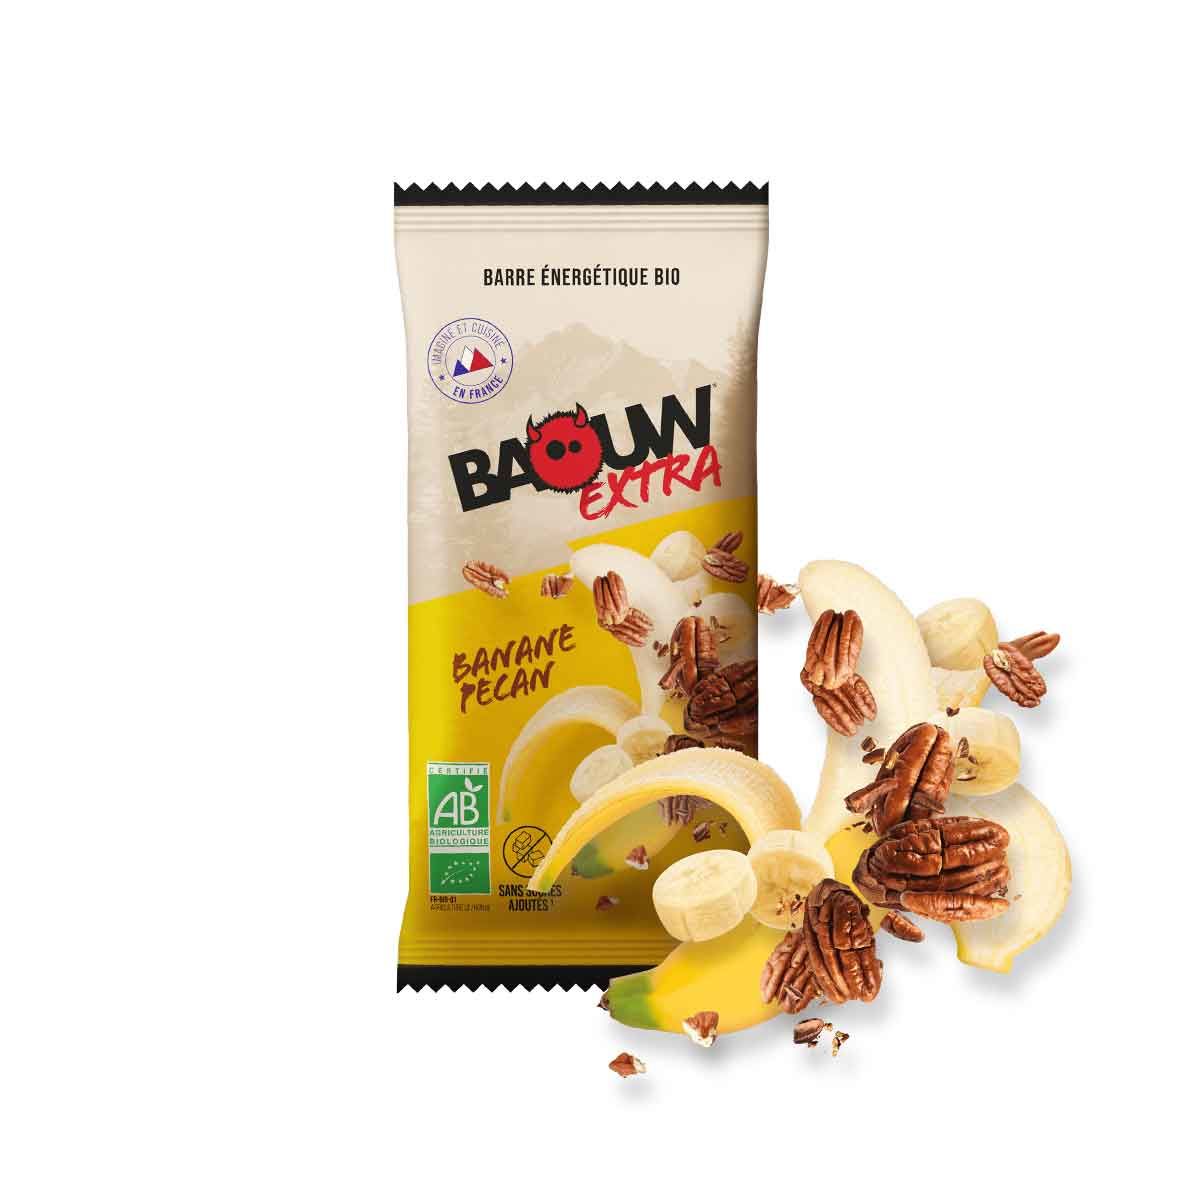 Barre énergétique bio Baouw Extra - Banane, pécan